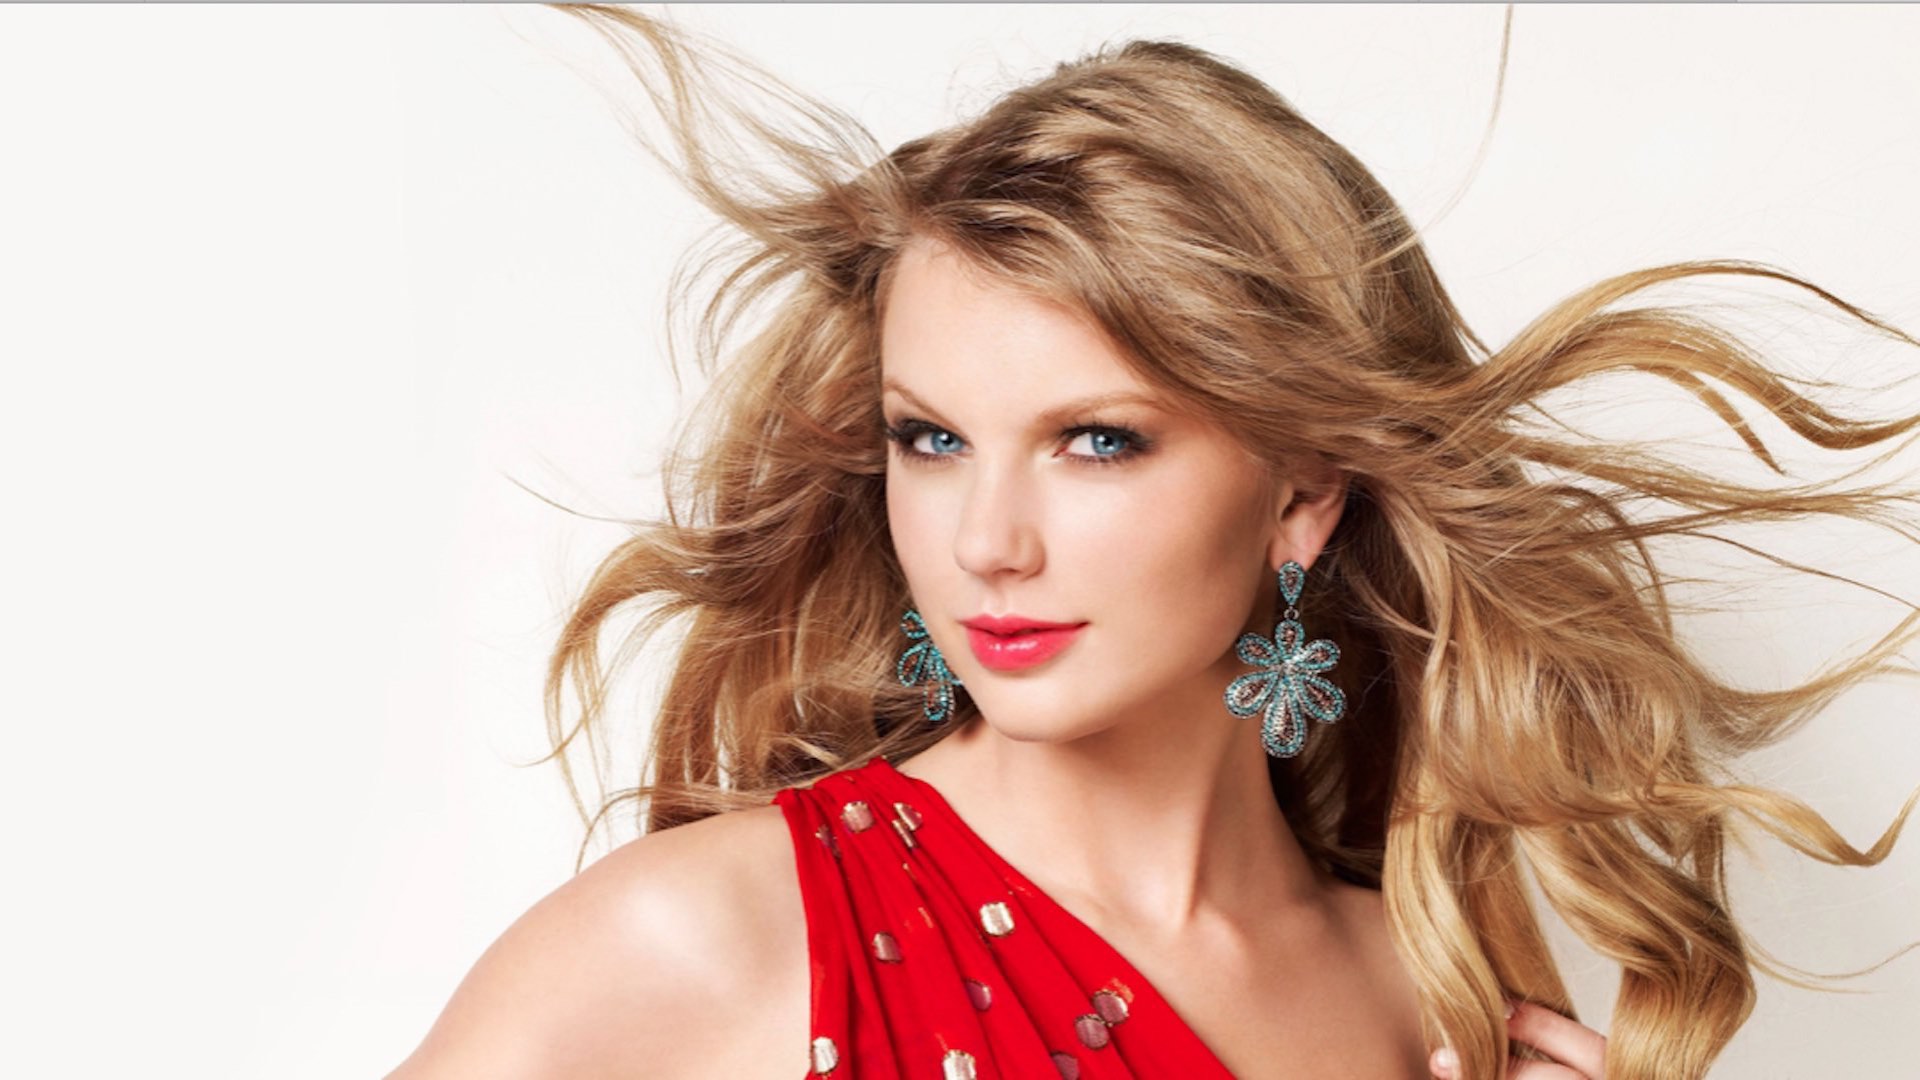 Taylor Swift relanzará su disco "Red"